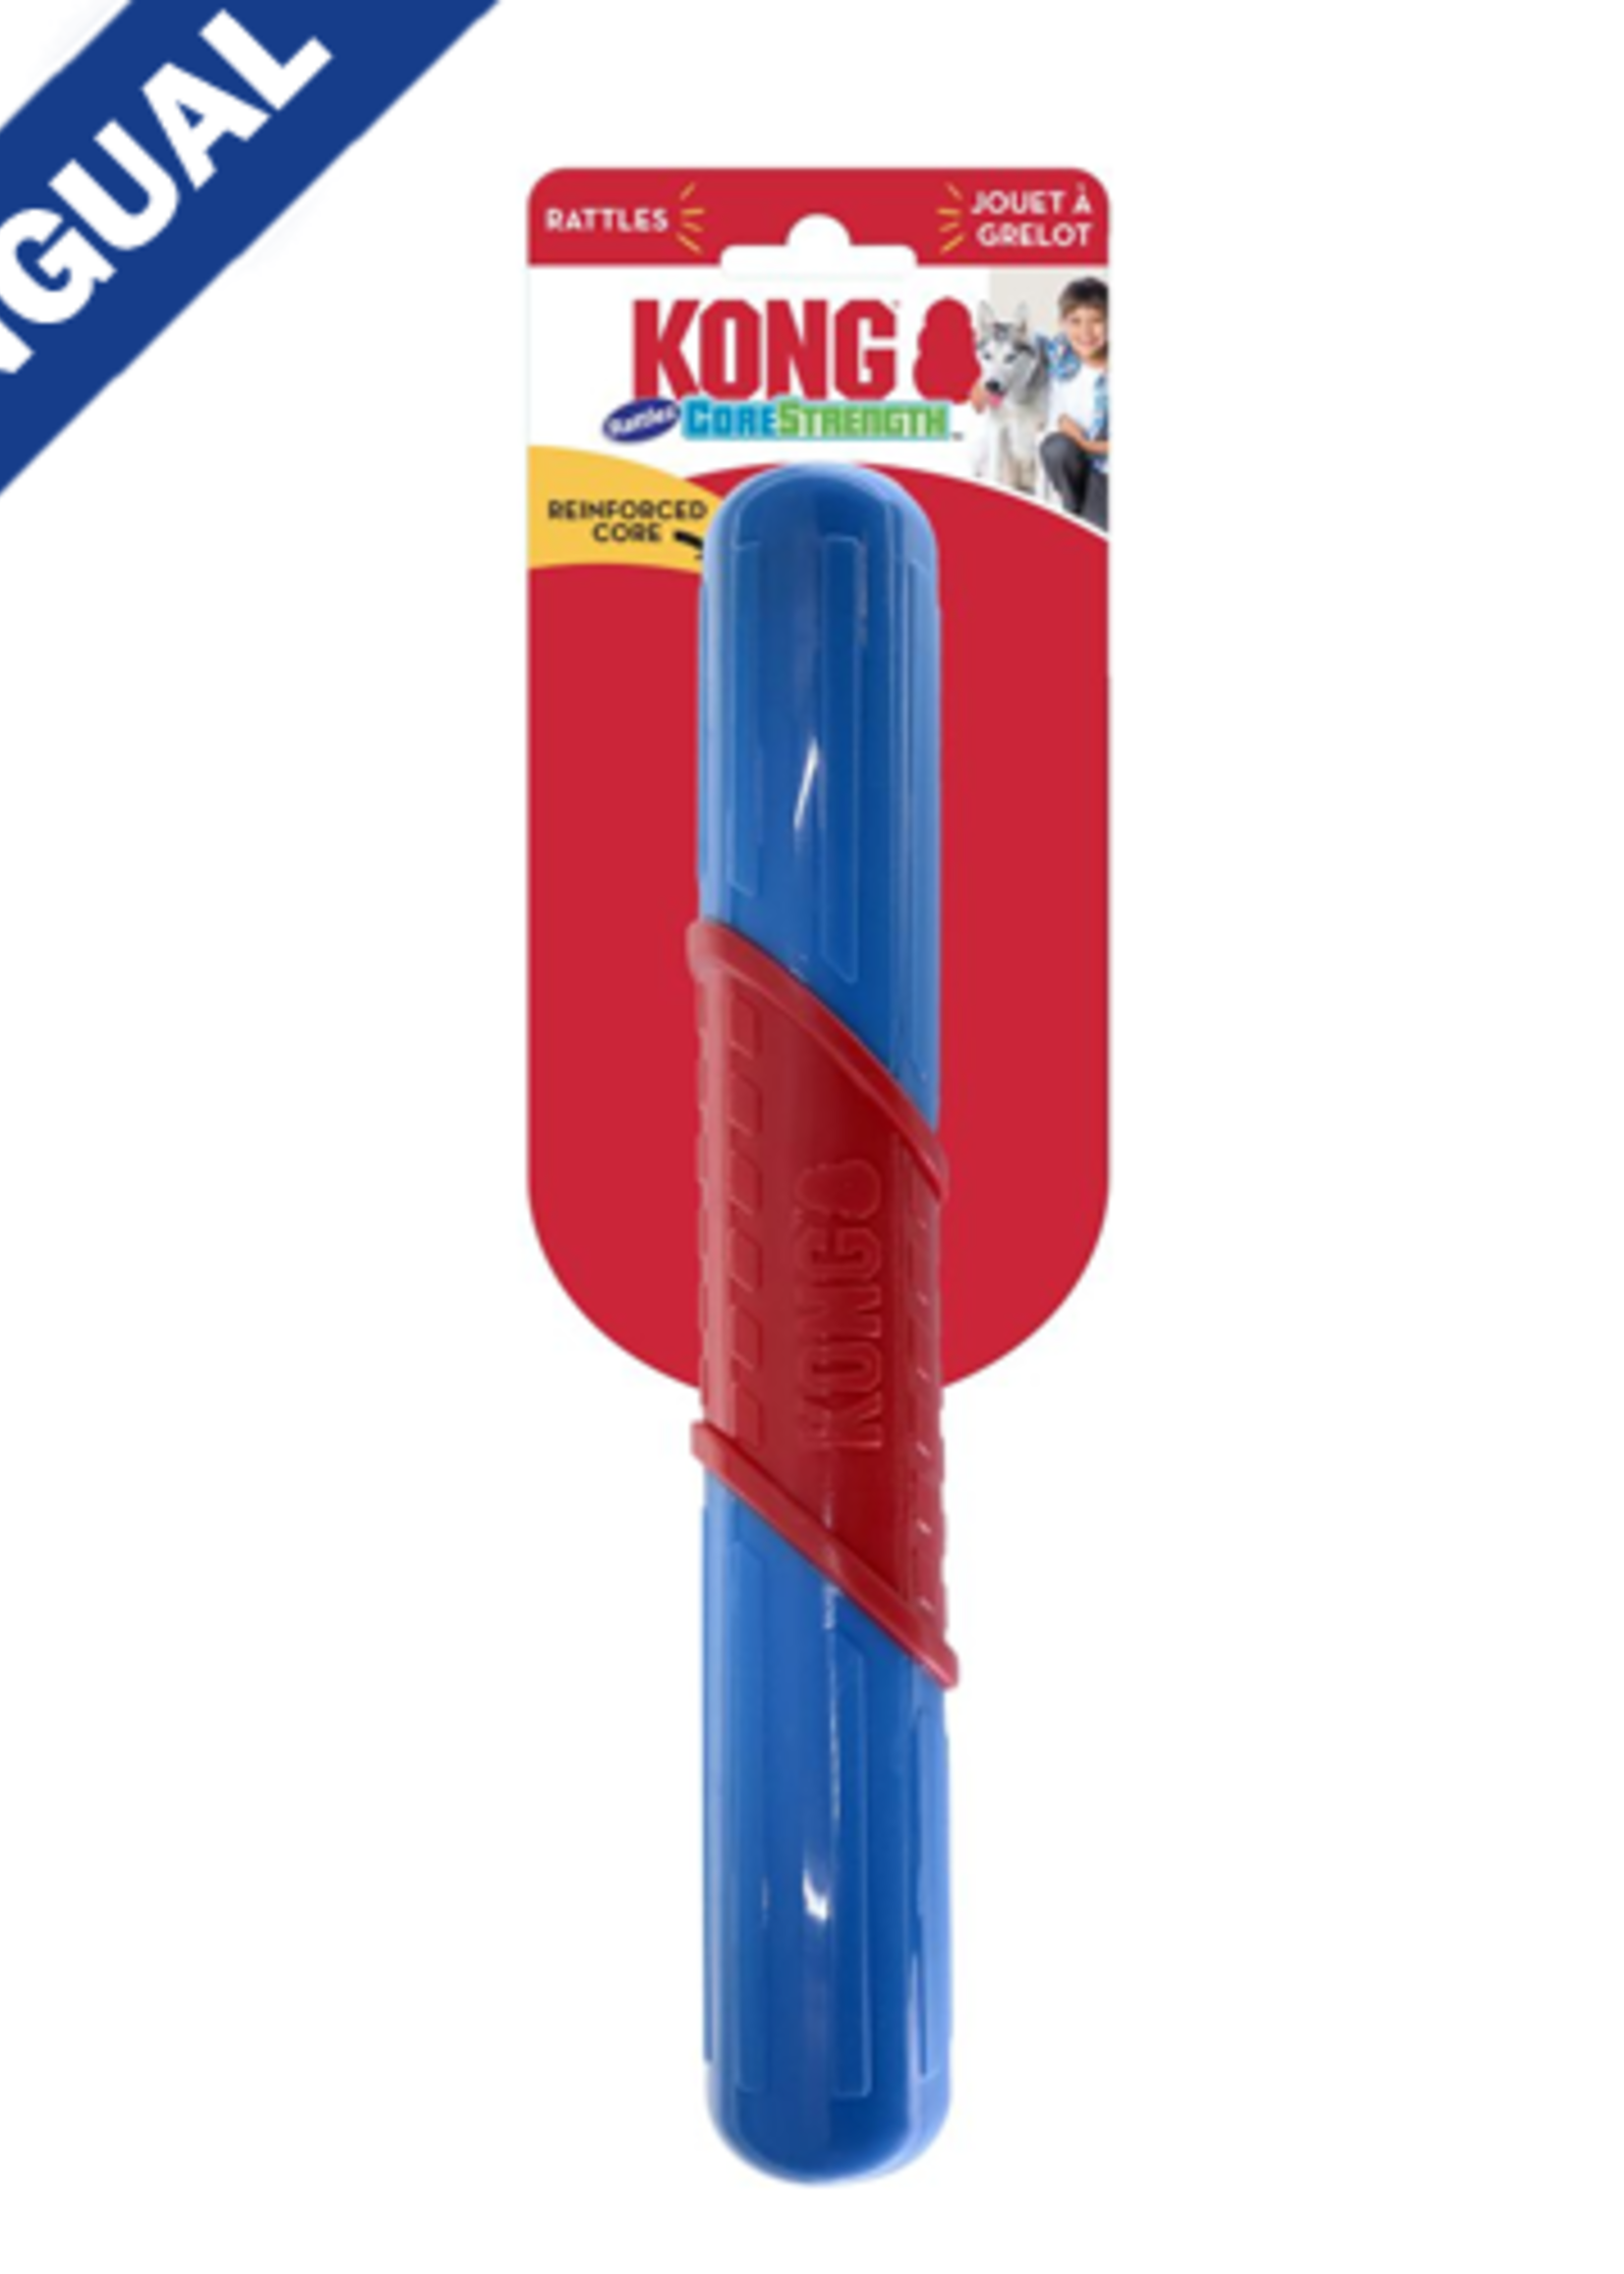 Kong® Kong CoreStrength Rattles Stick